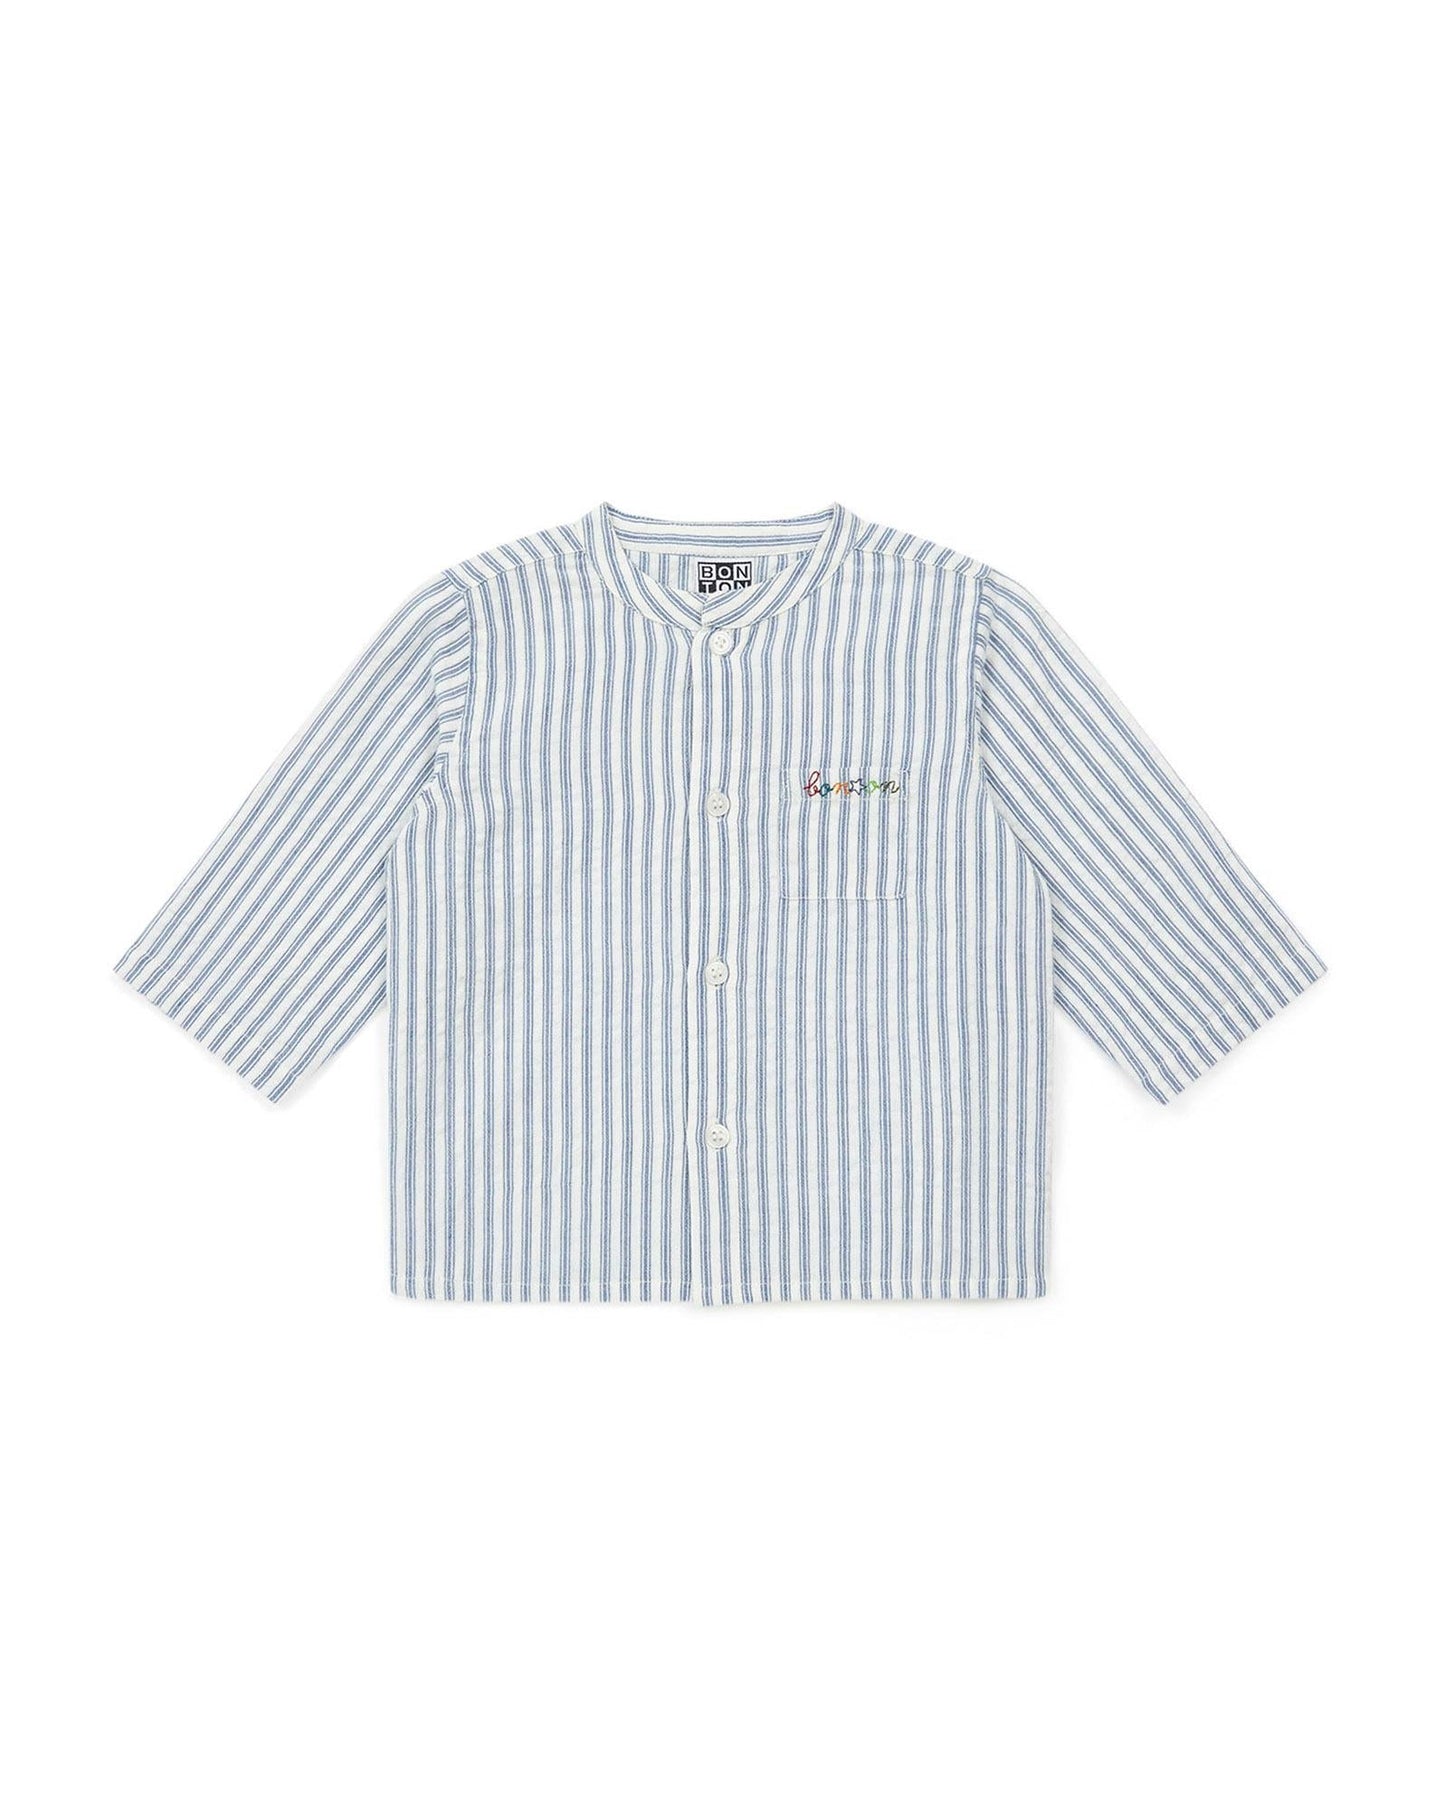 Shirt Inter Bleue Baby in Poplin striped